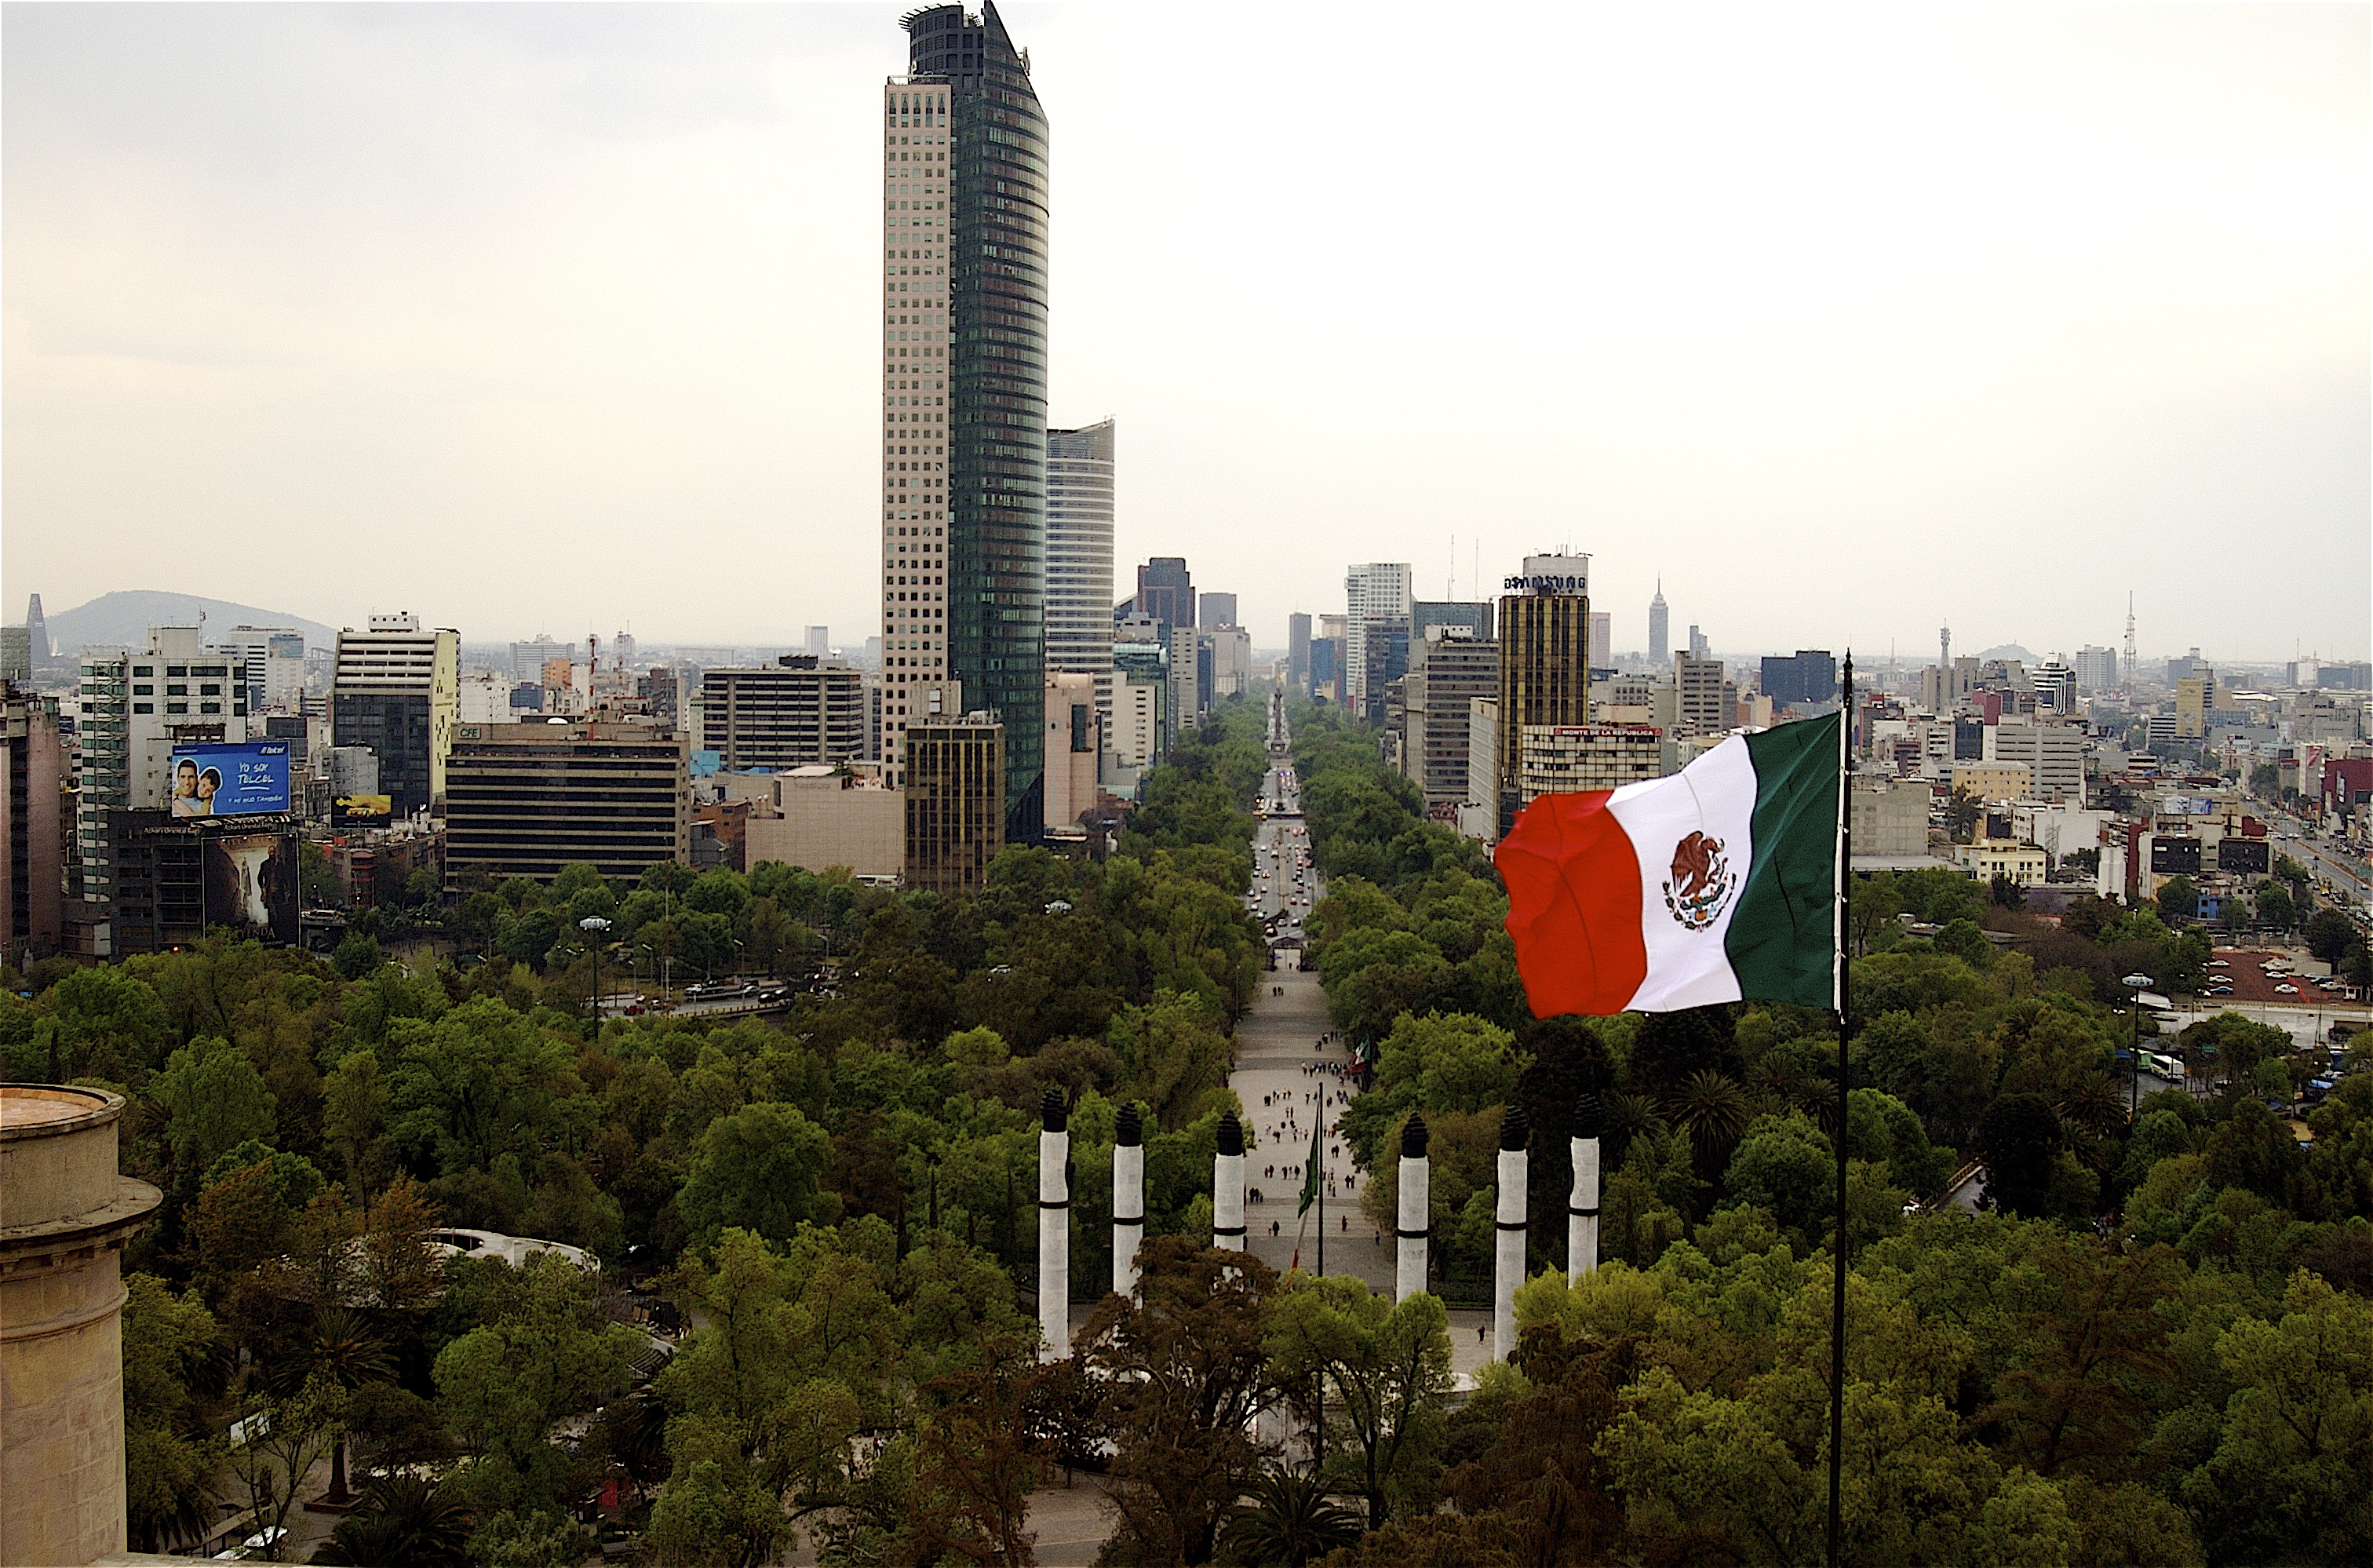 Ciudad de México, turismo de reuniones